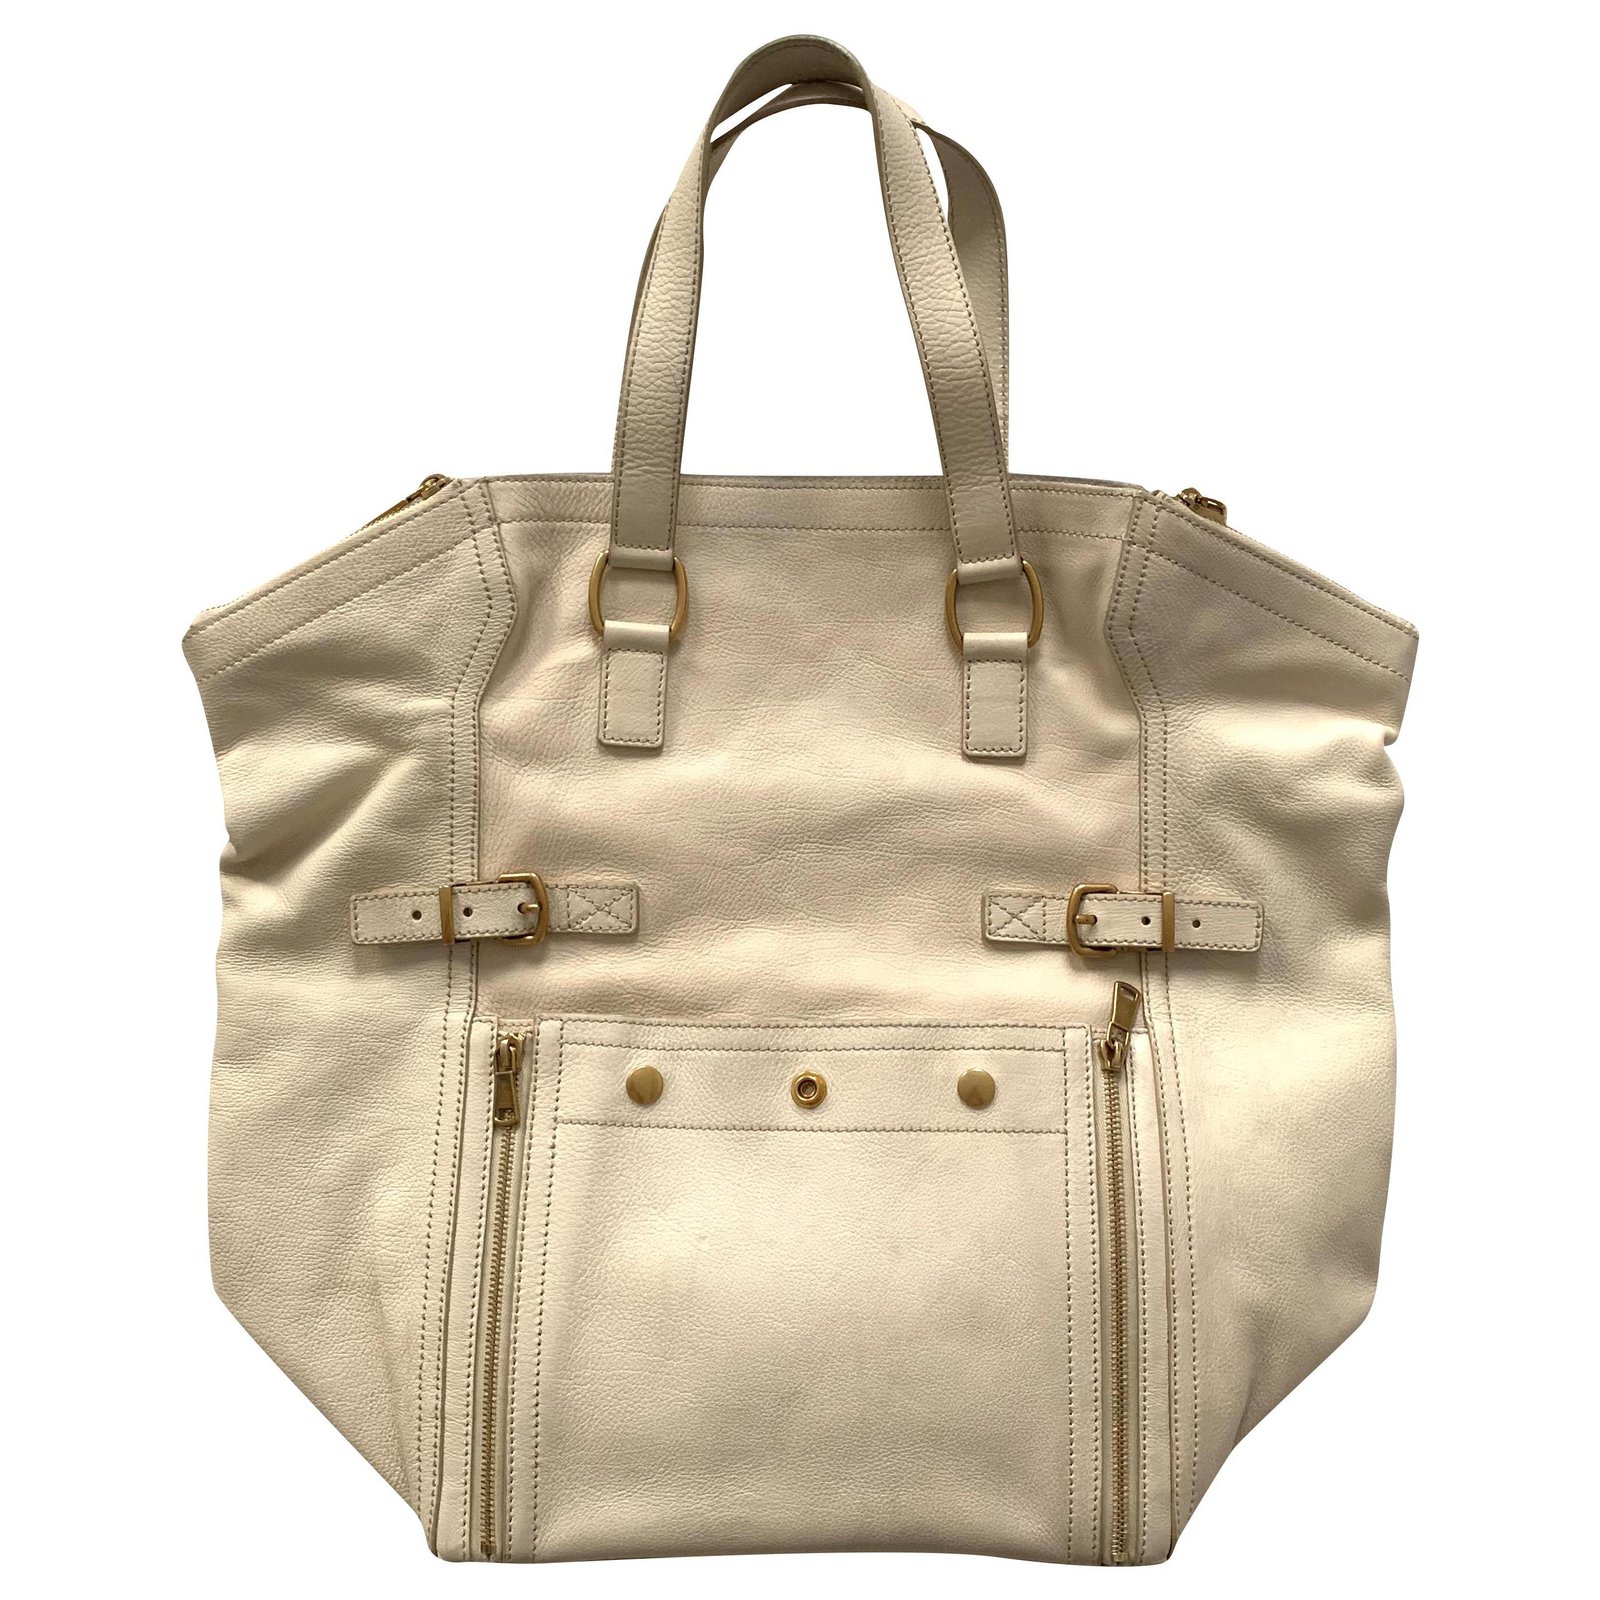 Yves Saint Laurent France Paris tote bag museum limited Size W36 × H36 cm  Unused